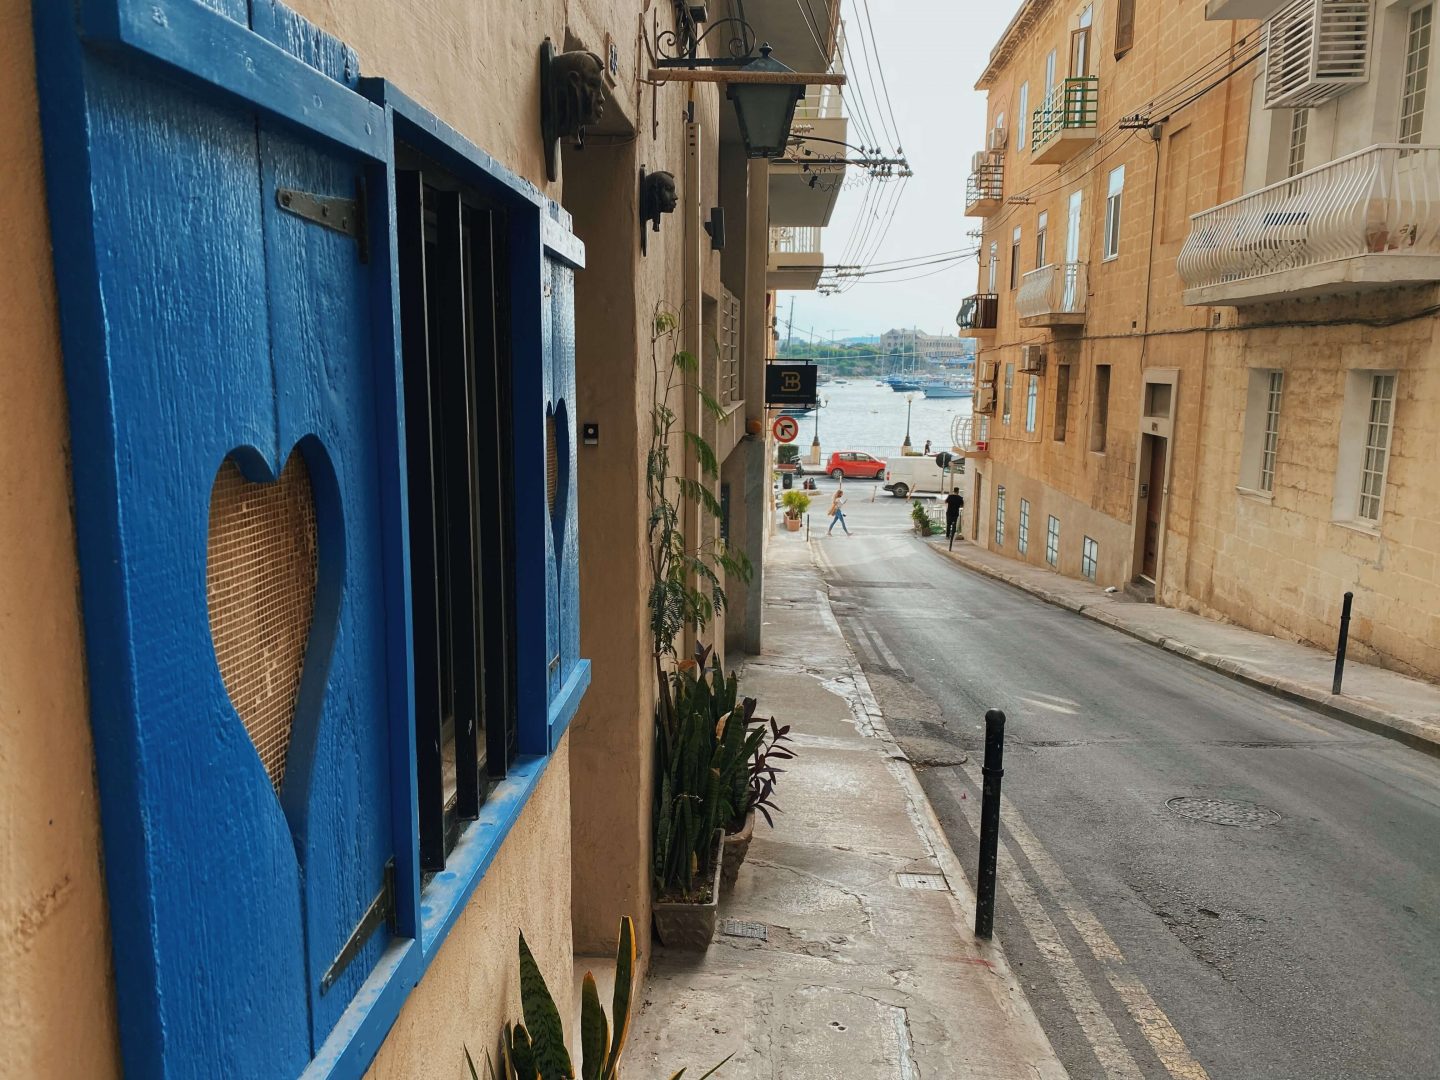 Things to see in Sliema Malta